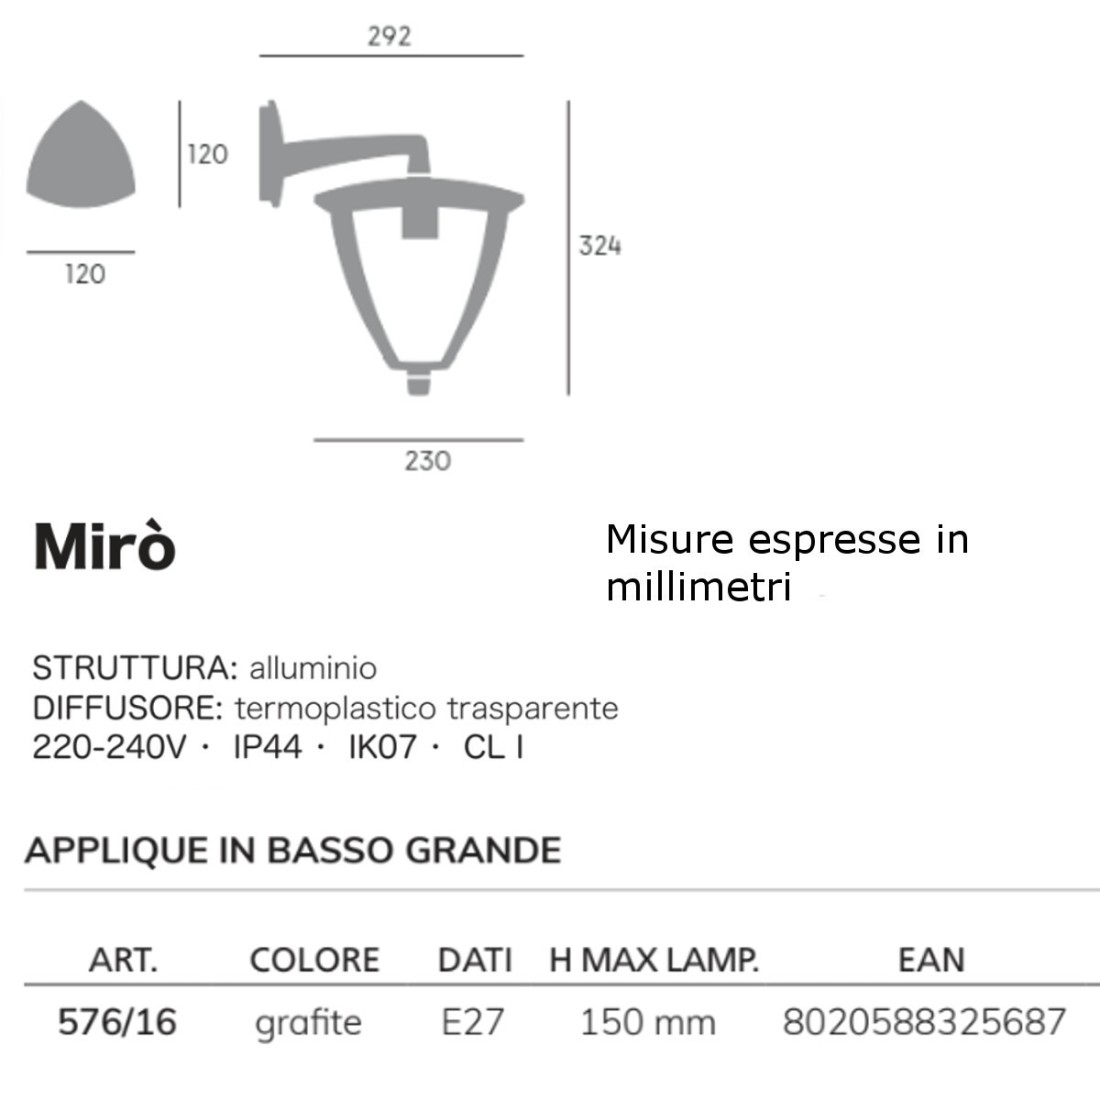 Applique classique Livos MIRO 576 16 E27 LED aluminium